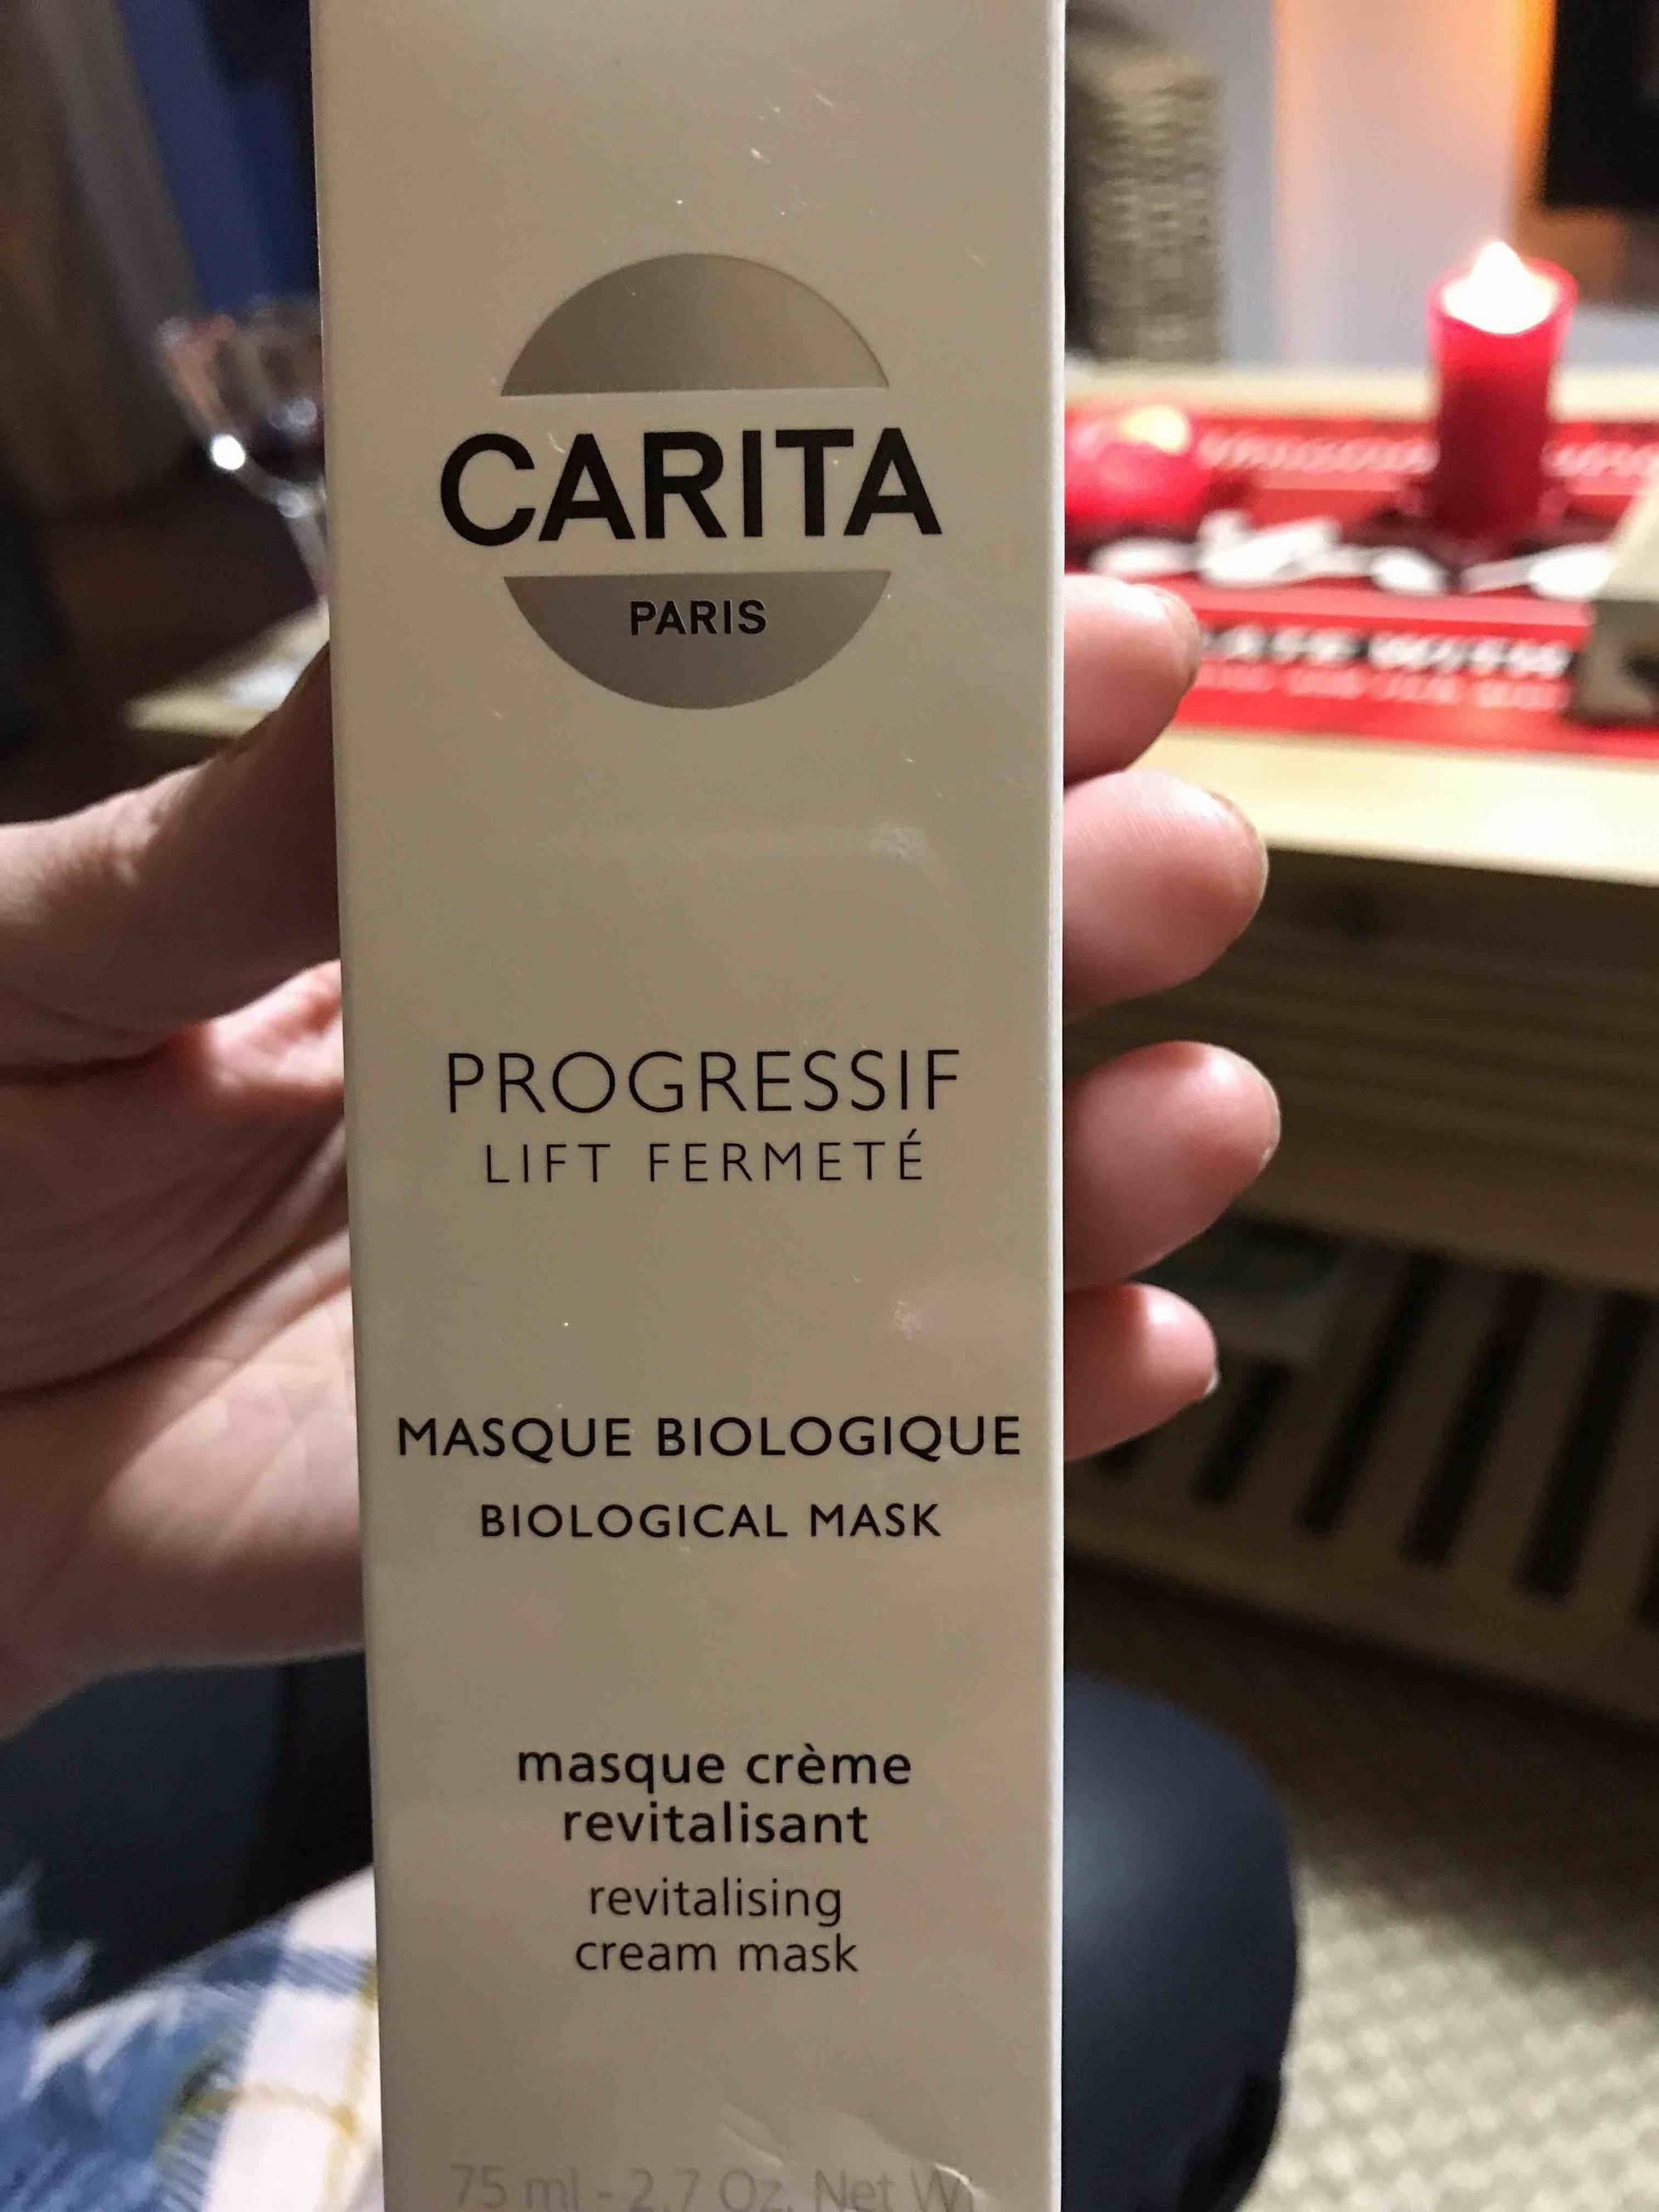 CARITA PARIS - Progressif lift fermeté - Masque biologique